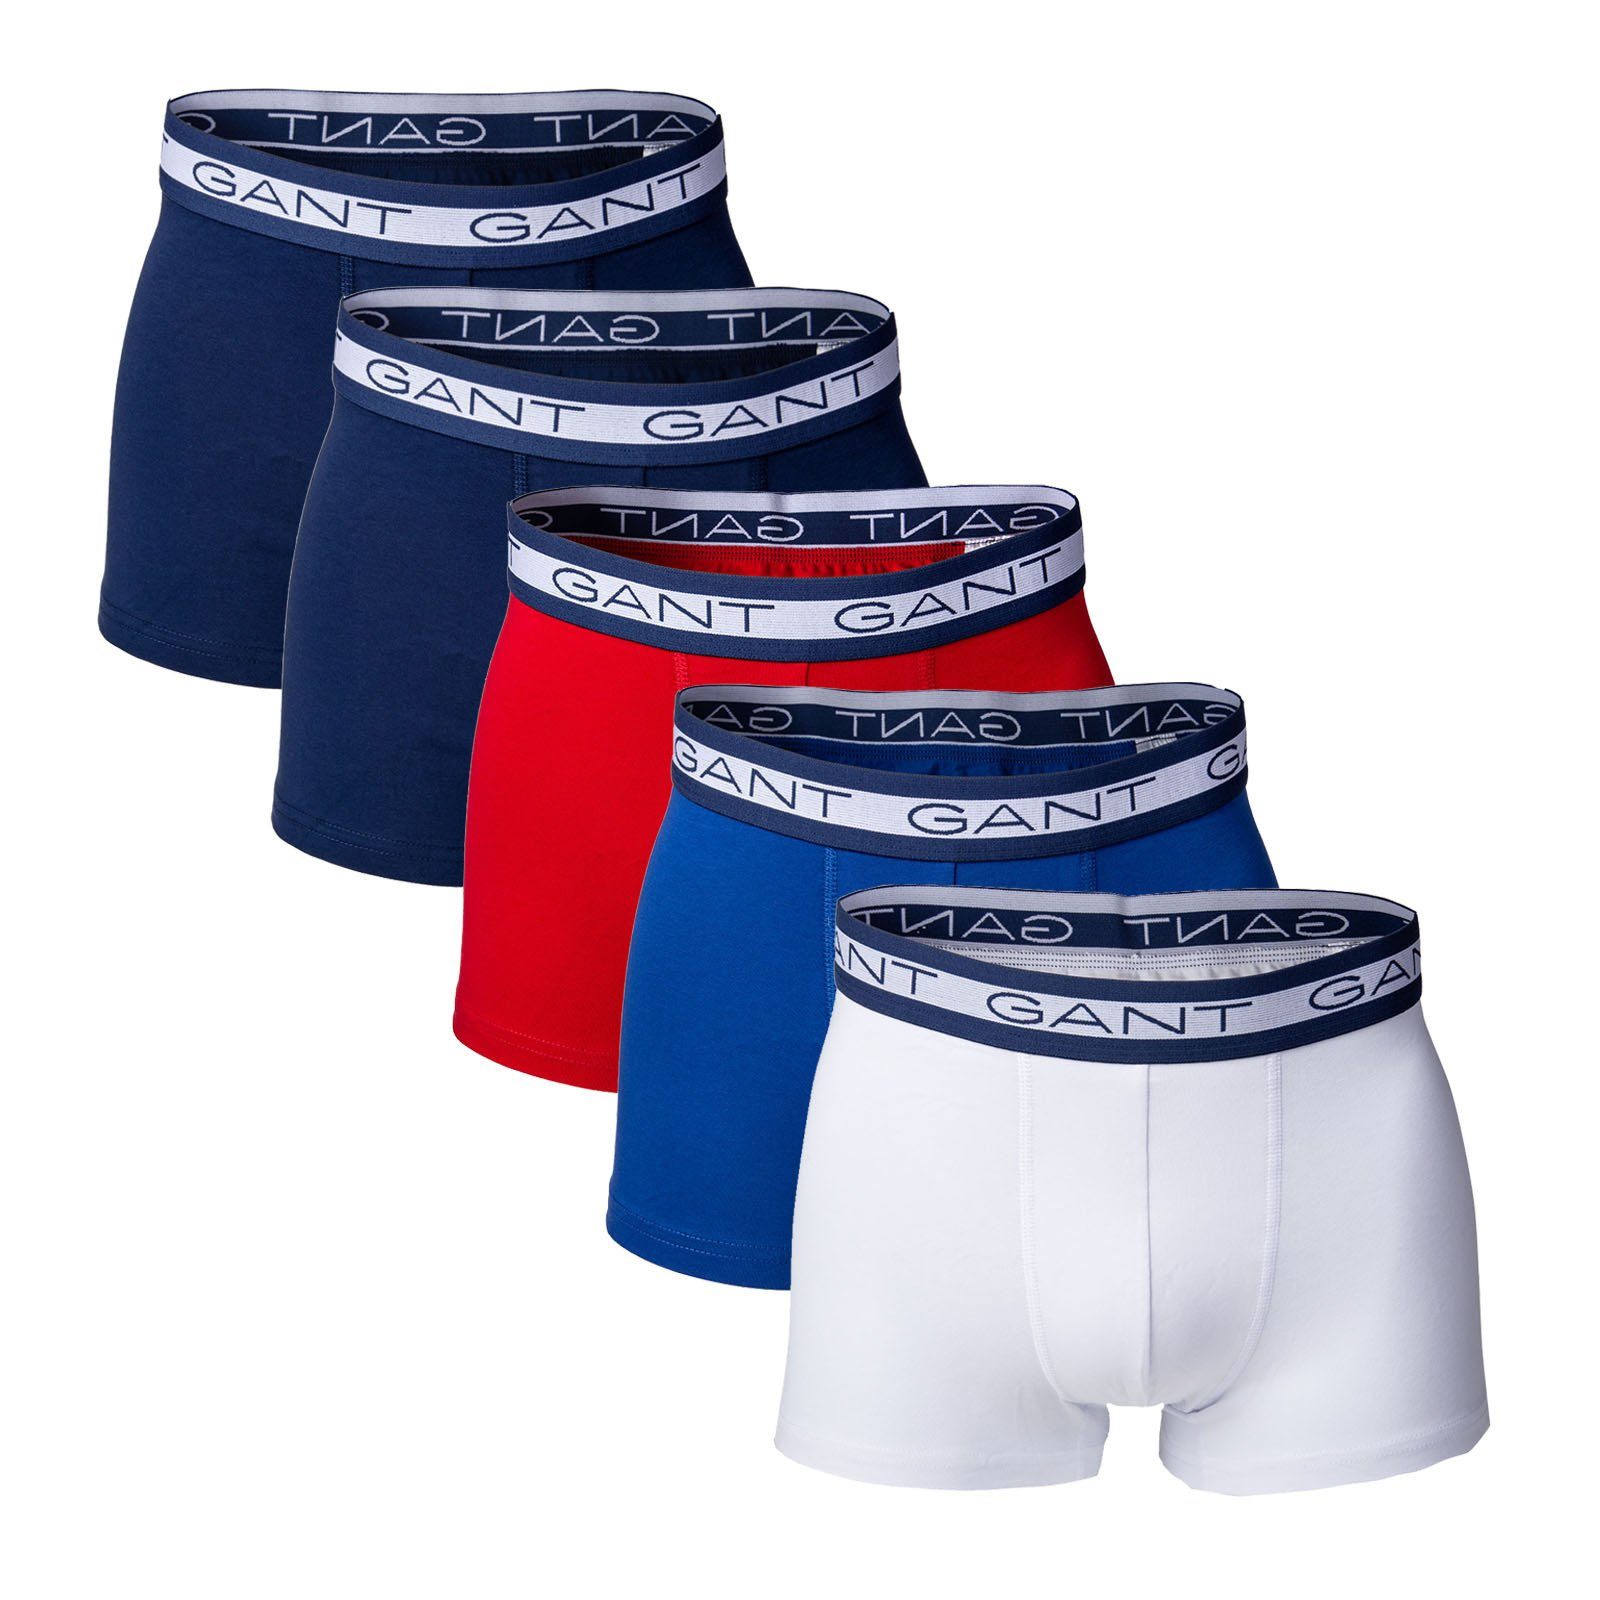 Gant Boxer Herren Boxer Shorts, 5er Pack - Basic Trunks